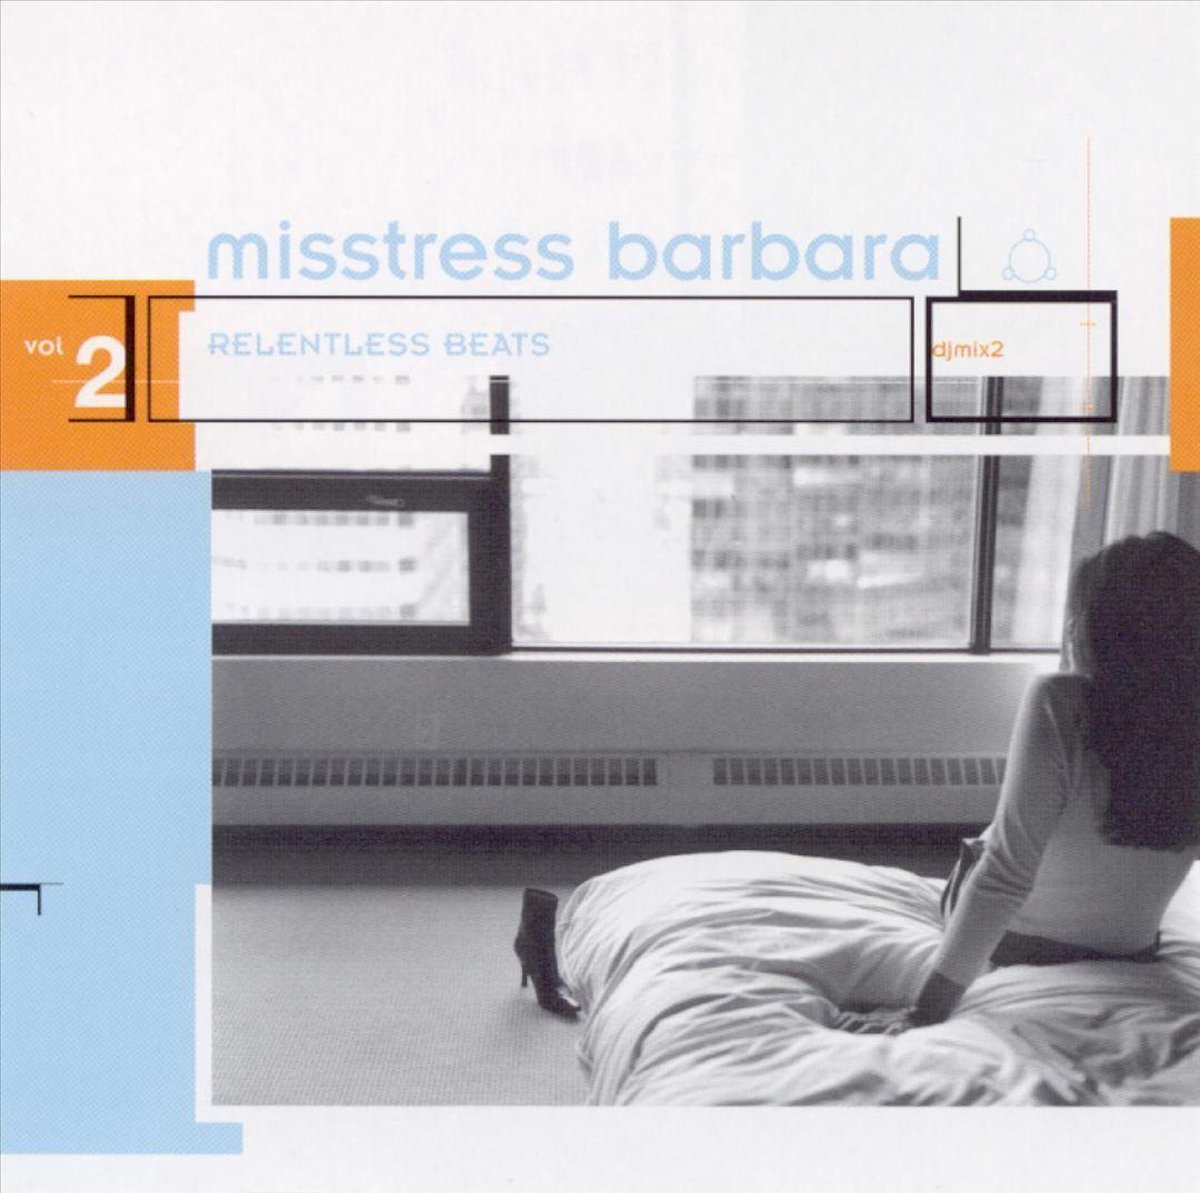 Relentless Beats Vol. 2 - Misstress Barbara